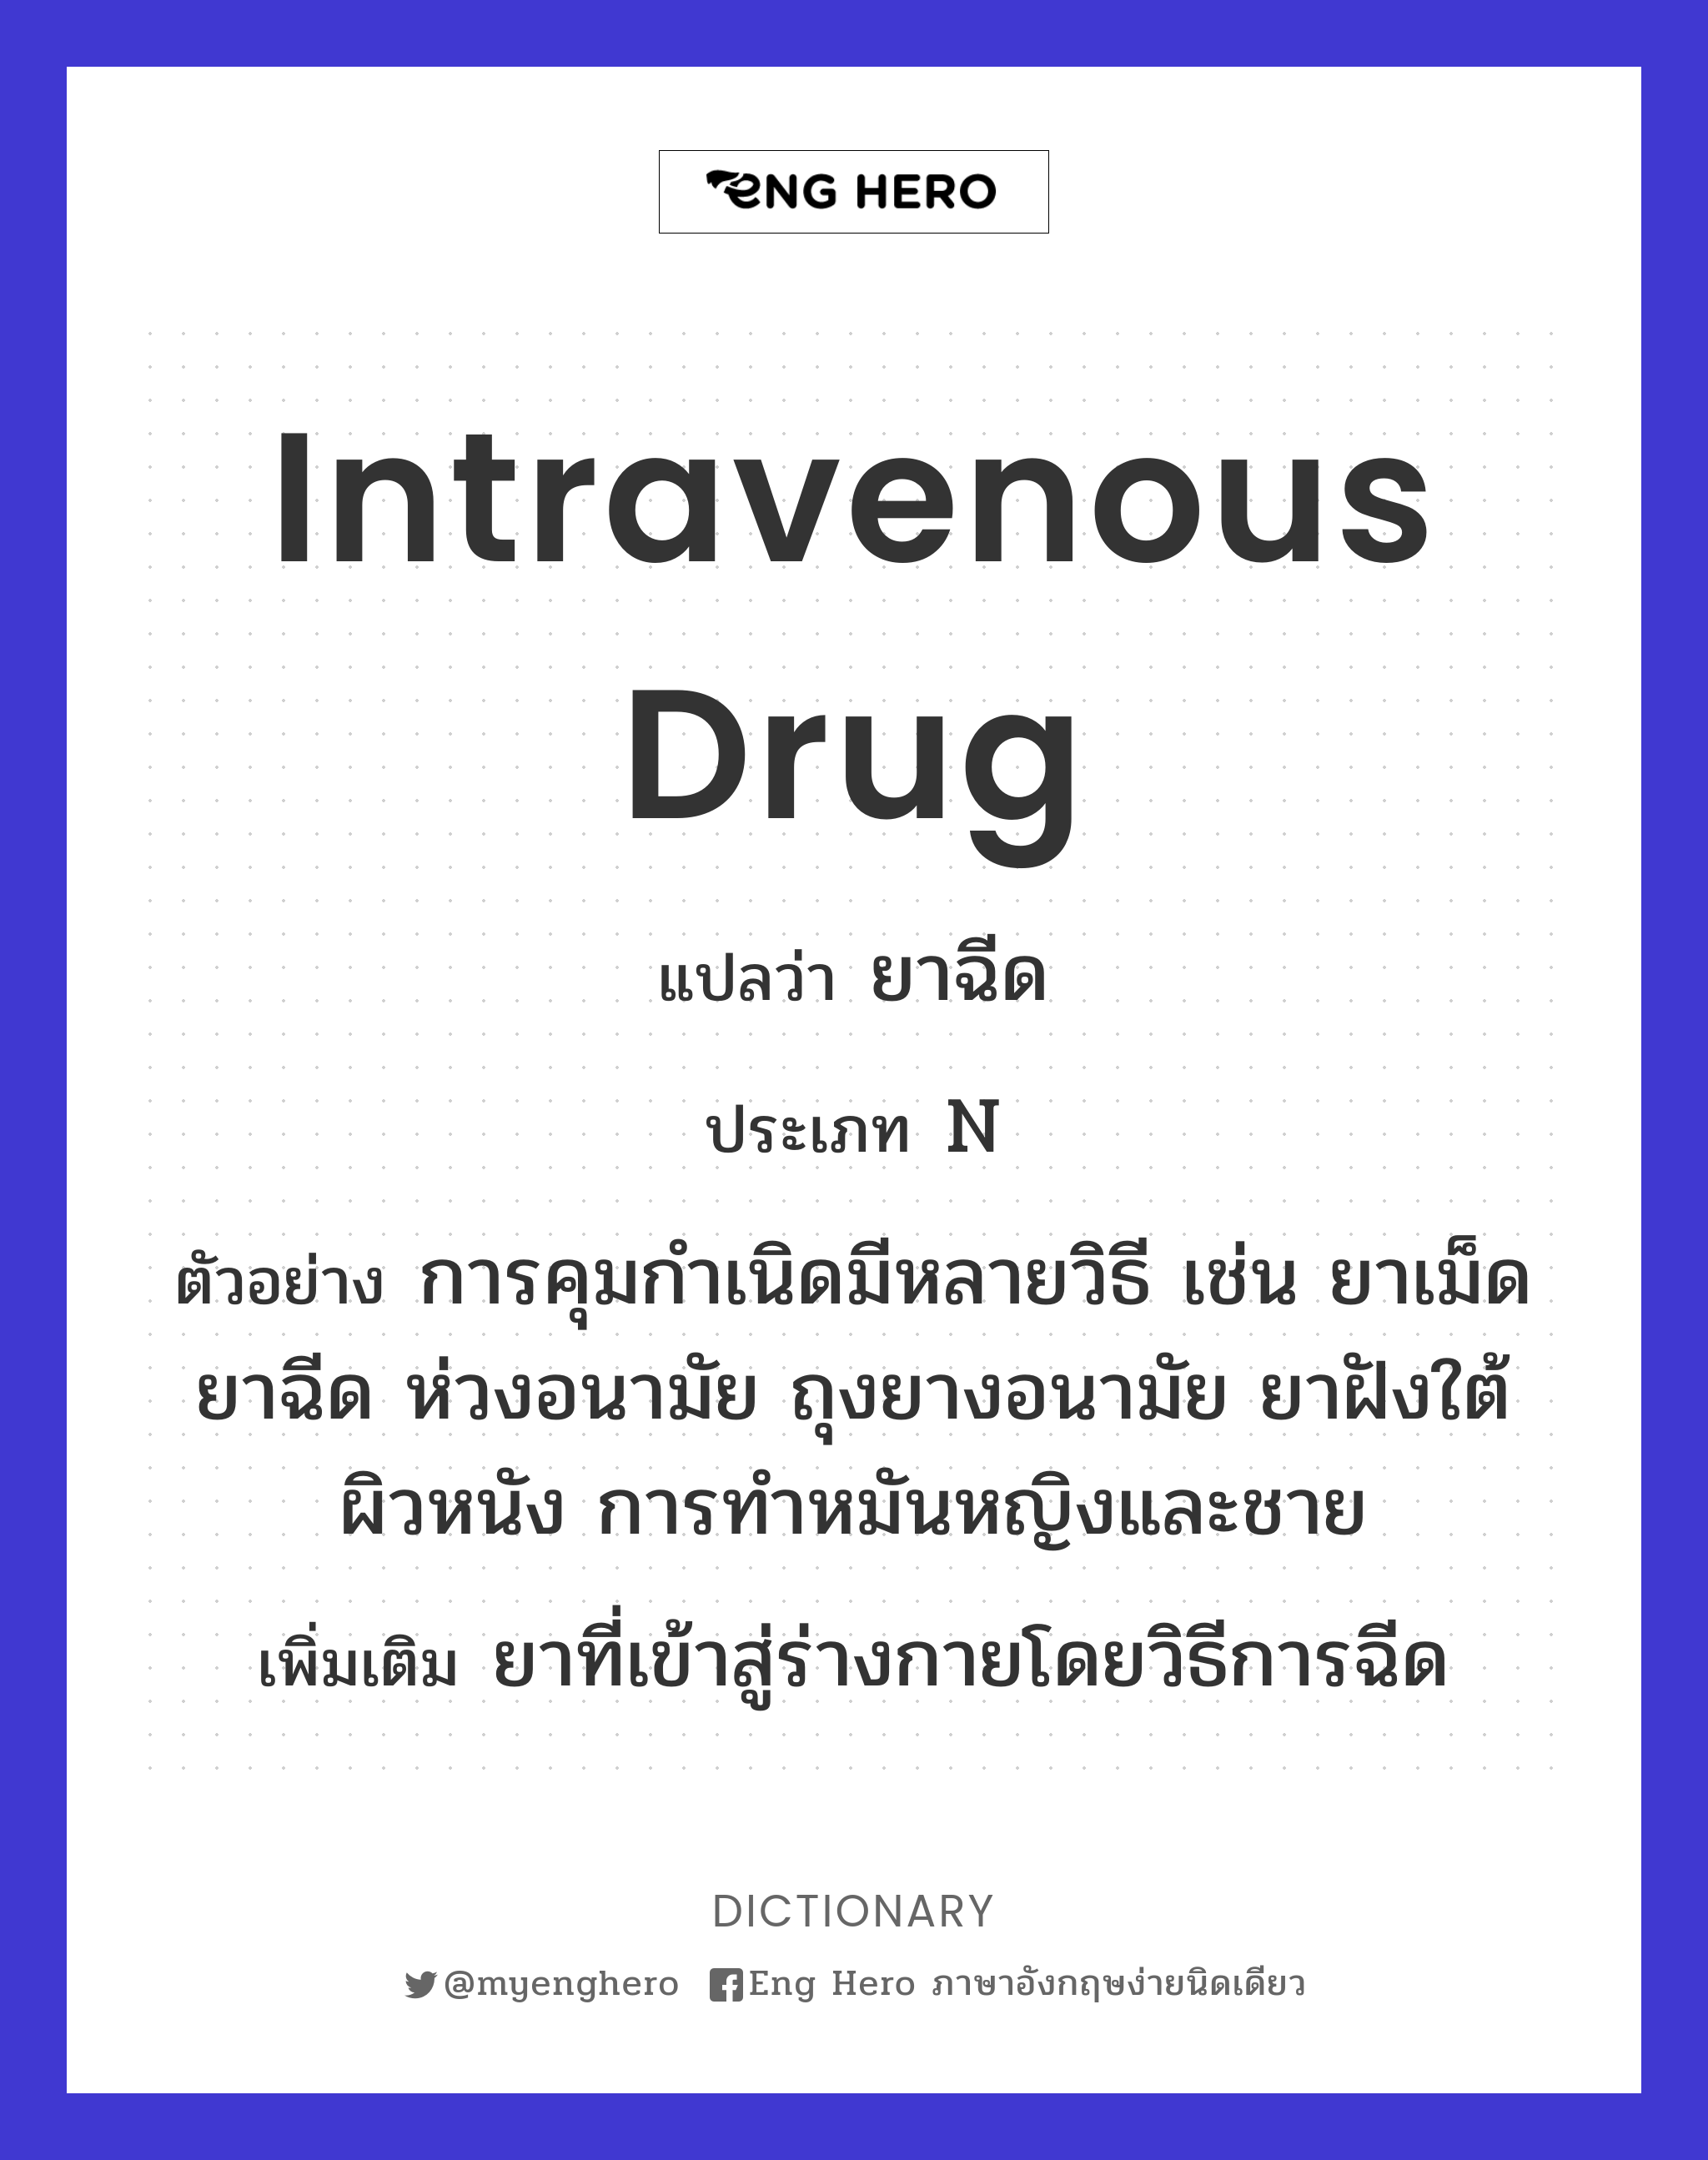 intravenous drug